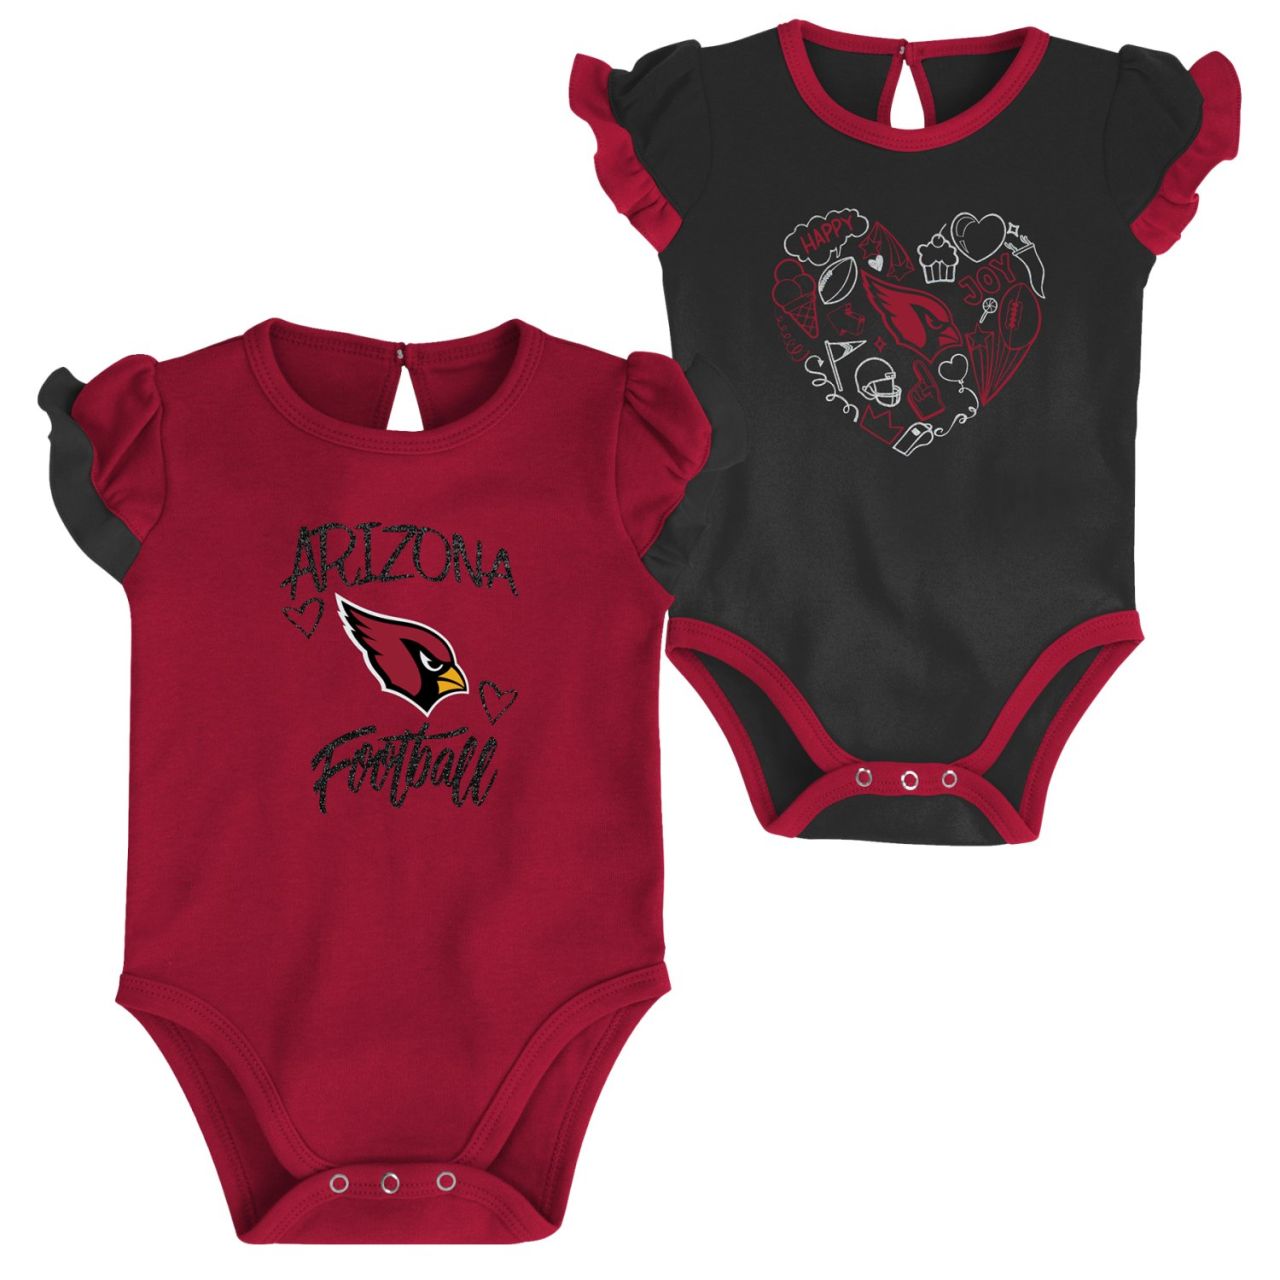 NFL Mädchen Baby 2er Body-Set Arizona Cardinals von Outerstuff